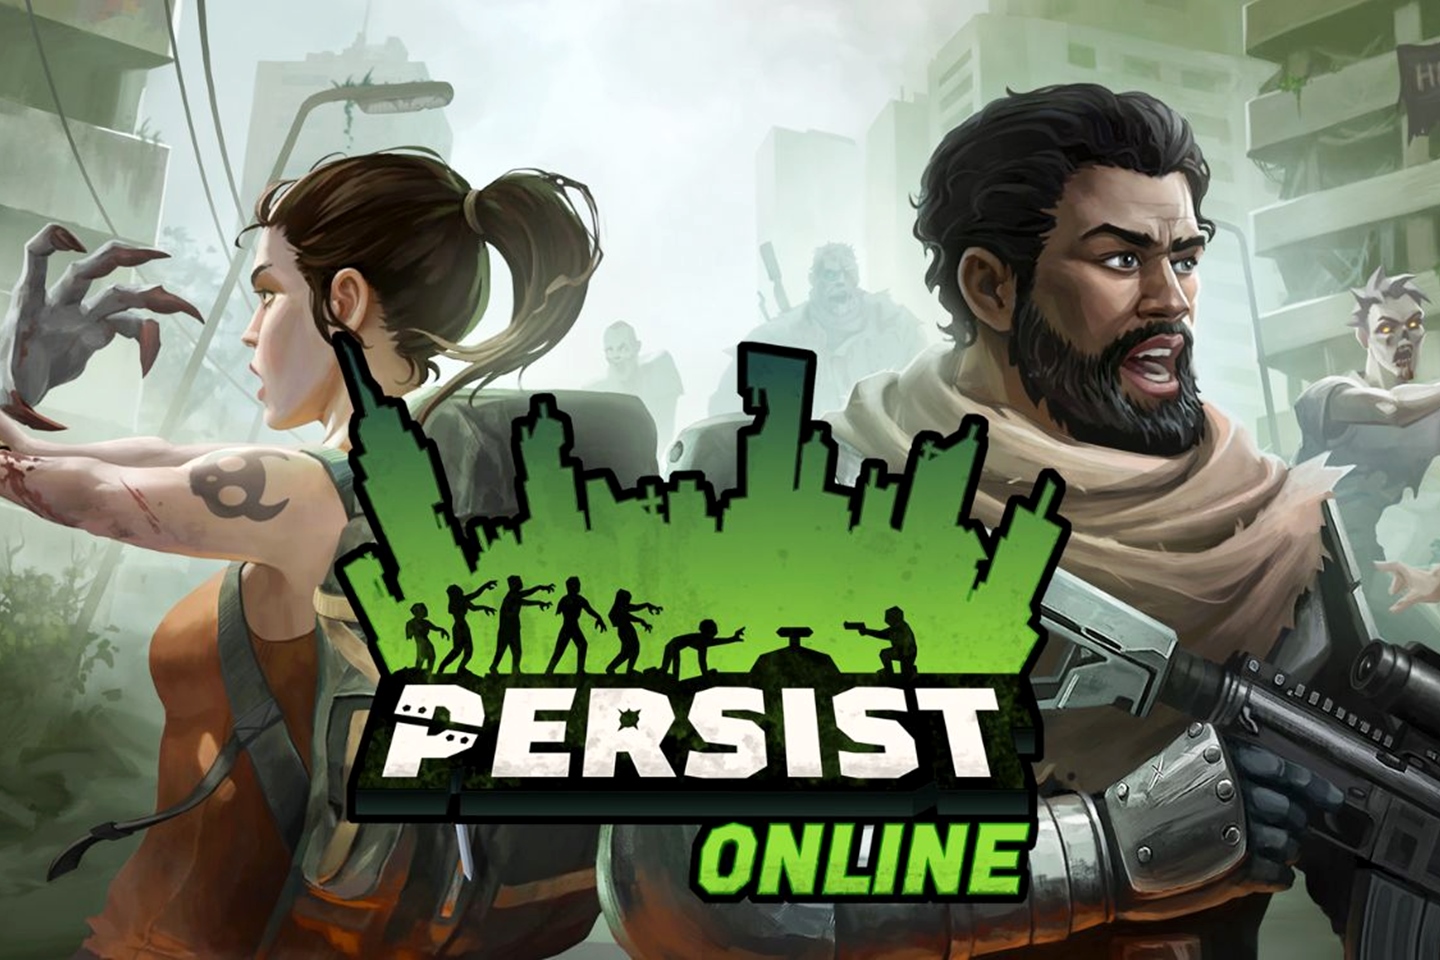 Persist Online, dos criadores de Tibia, será apresentado na Gamescom Latam